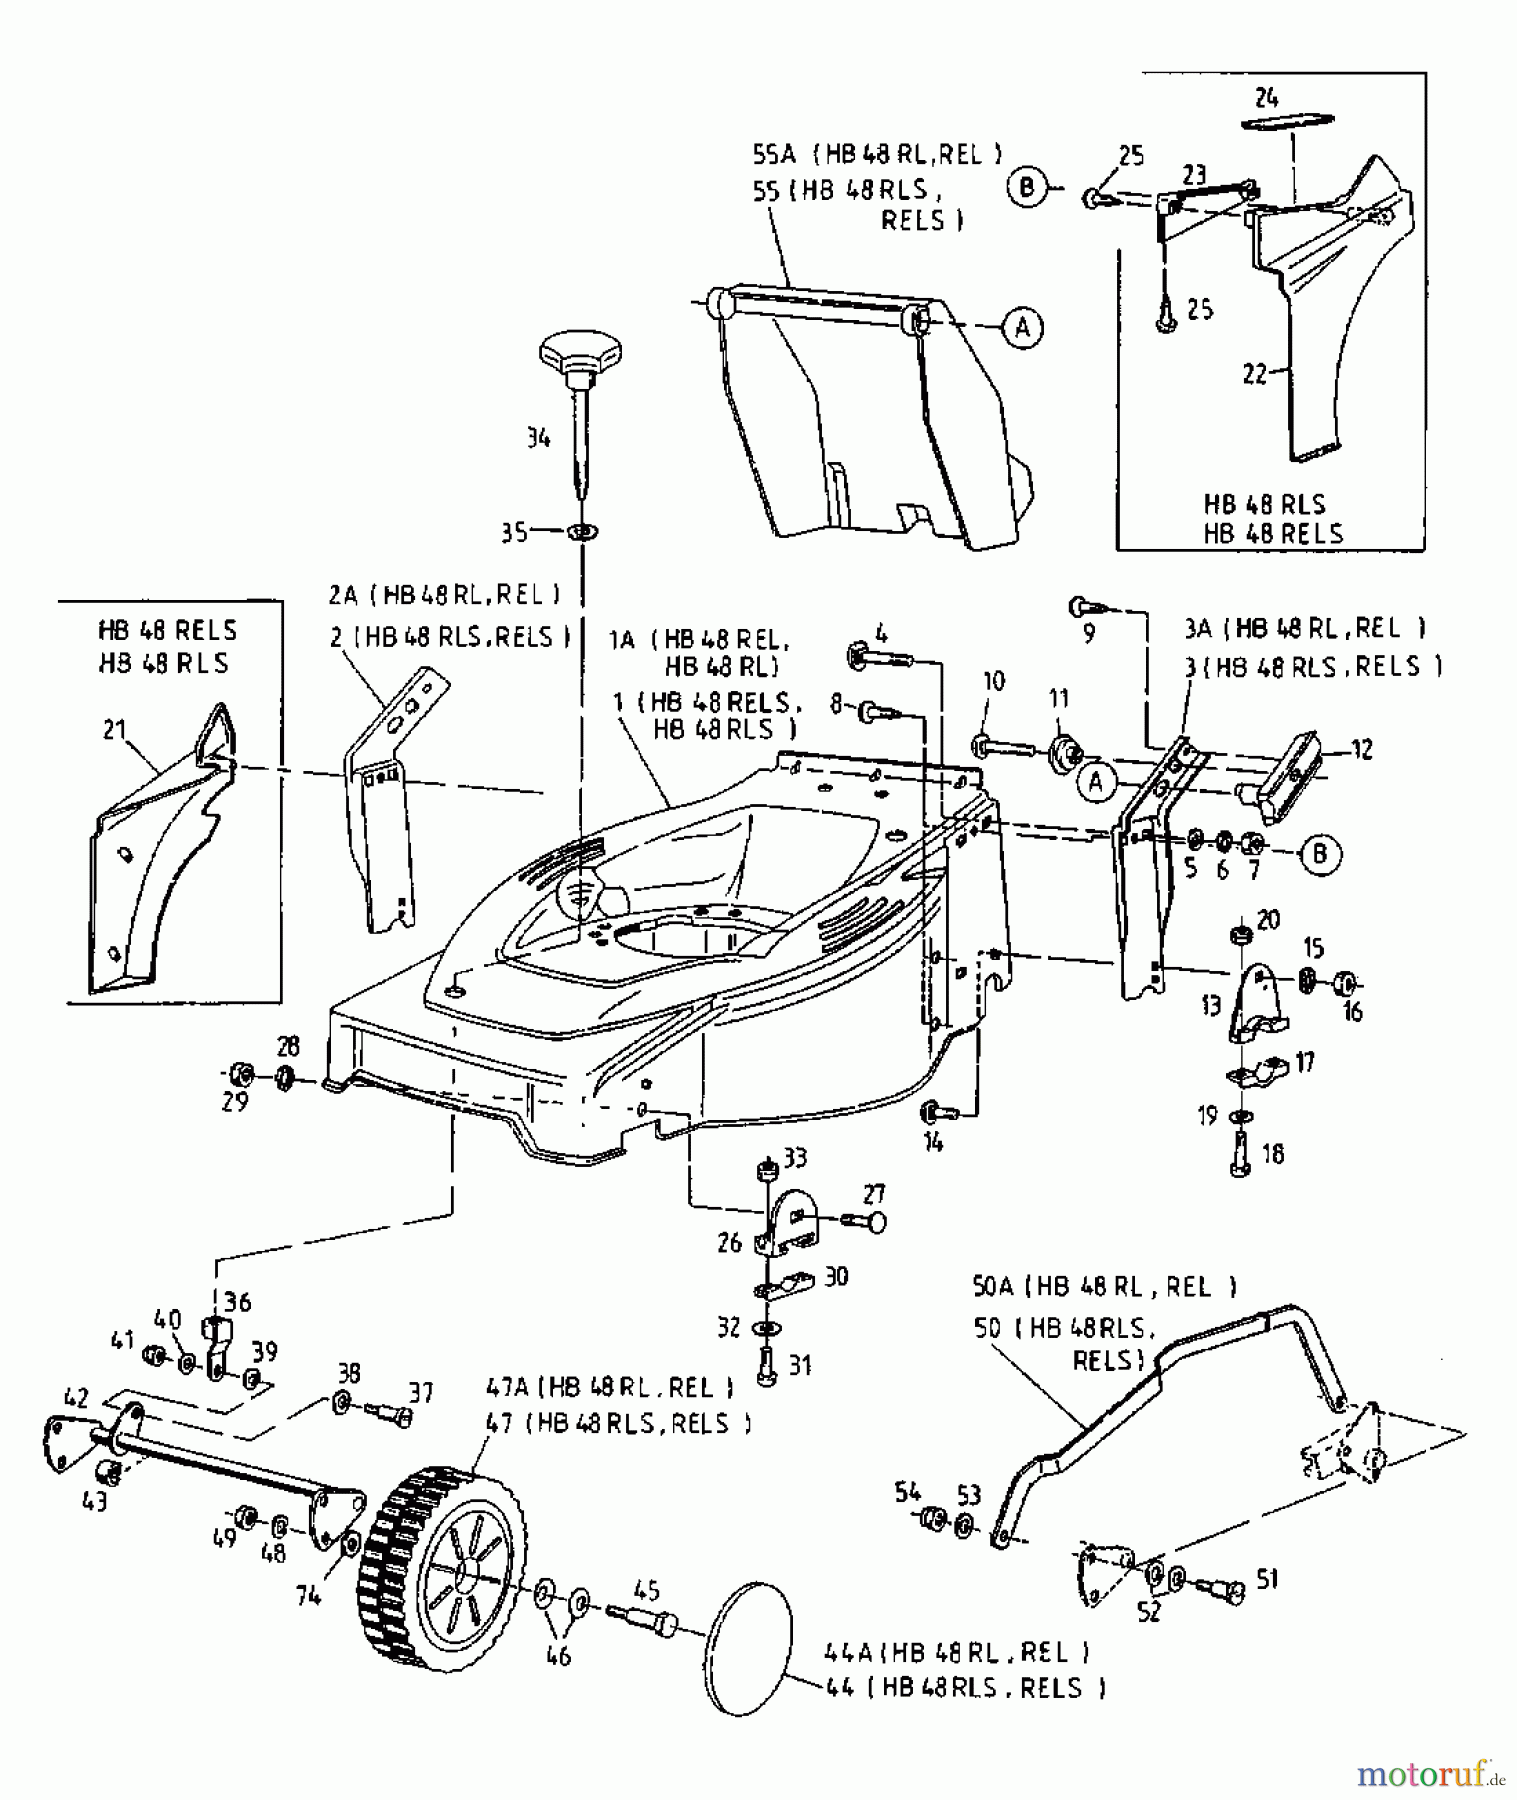  Gutbrod Motormäher mit Antrieb HB 48 RLS 12C-T58X690  (2000) Grundgerät